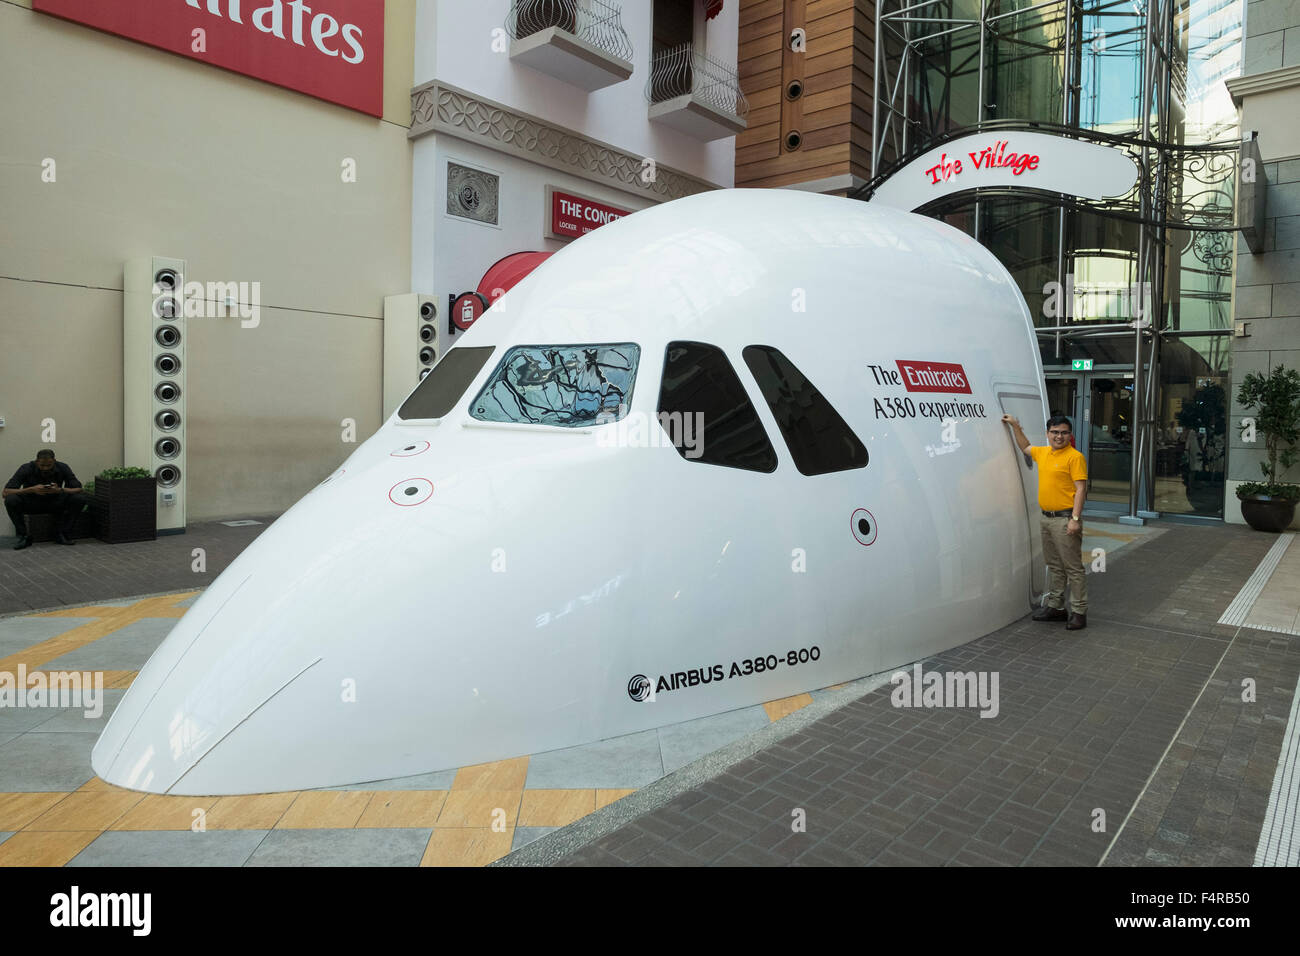 Simulateur de vol Airbus A380-800 à l'intérieur de Dubaï Mall à Dubaï Émirats Arabes Unis Banque D'Images